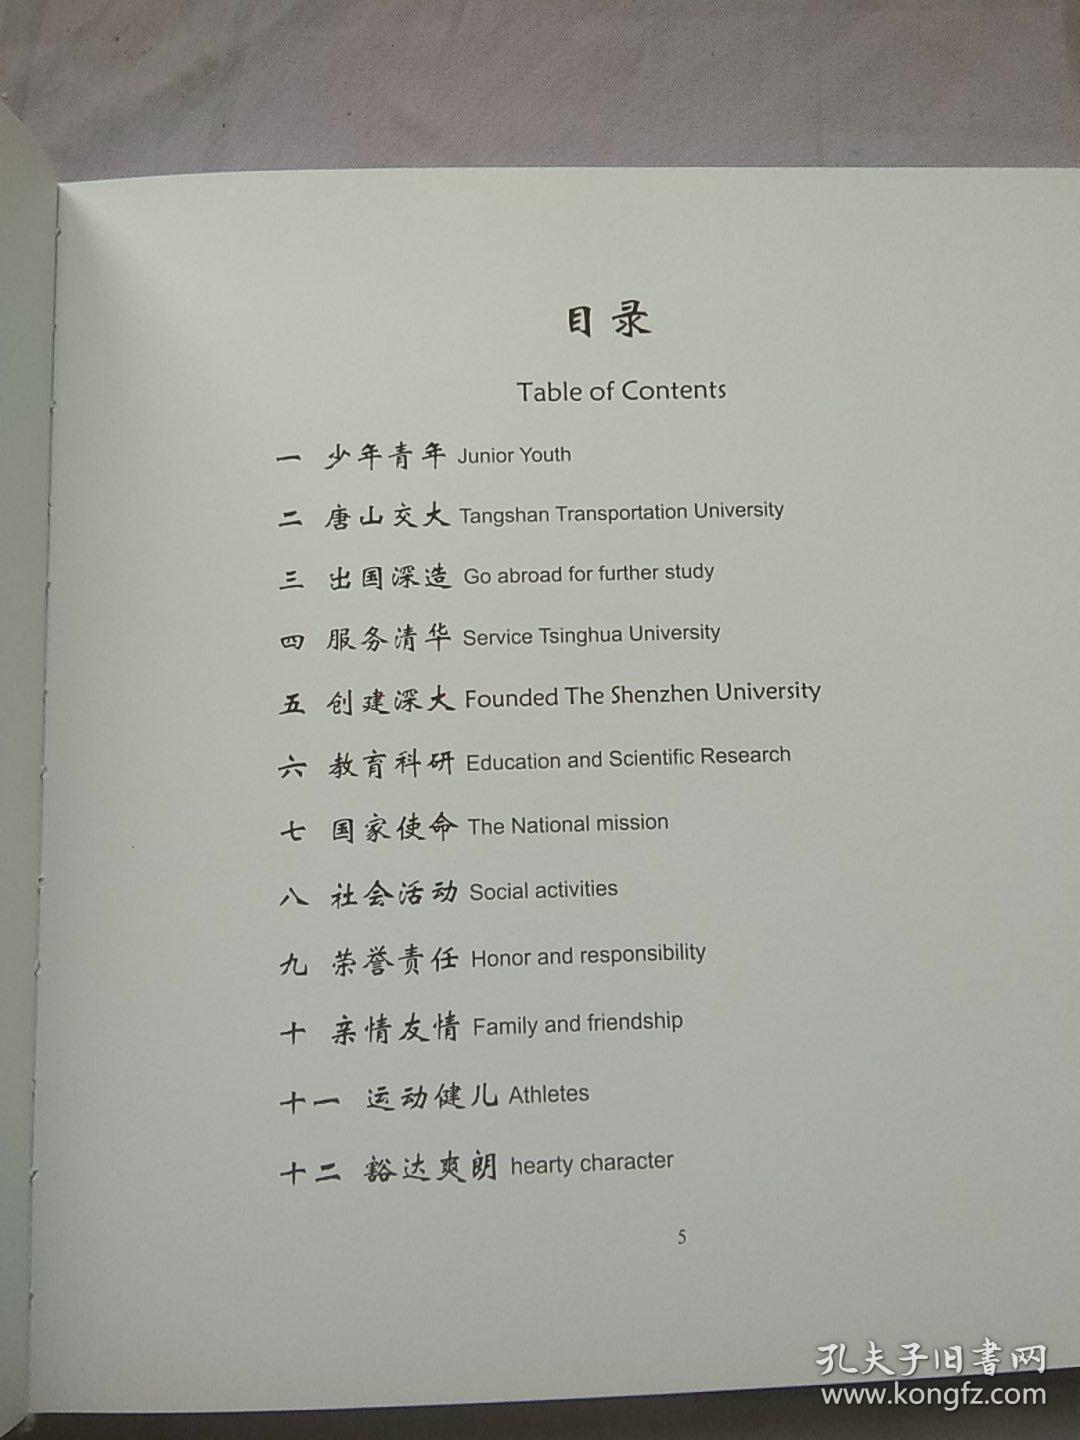 张维画册 为纪念父亲张维教授诞辰100周年。精装